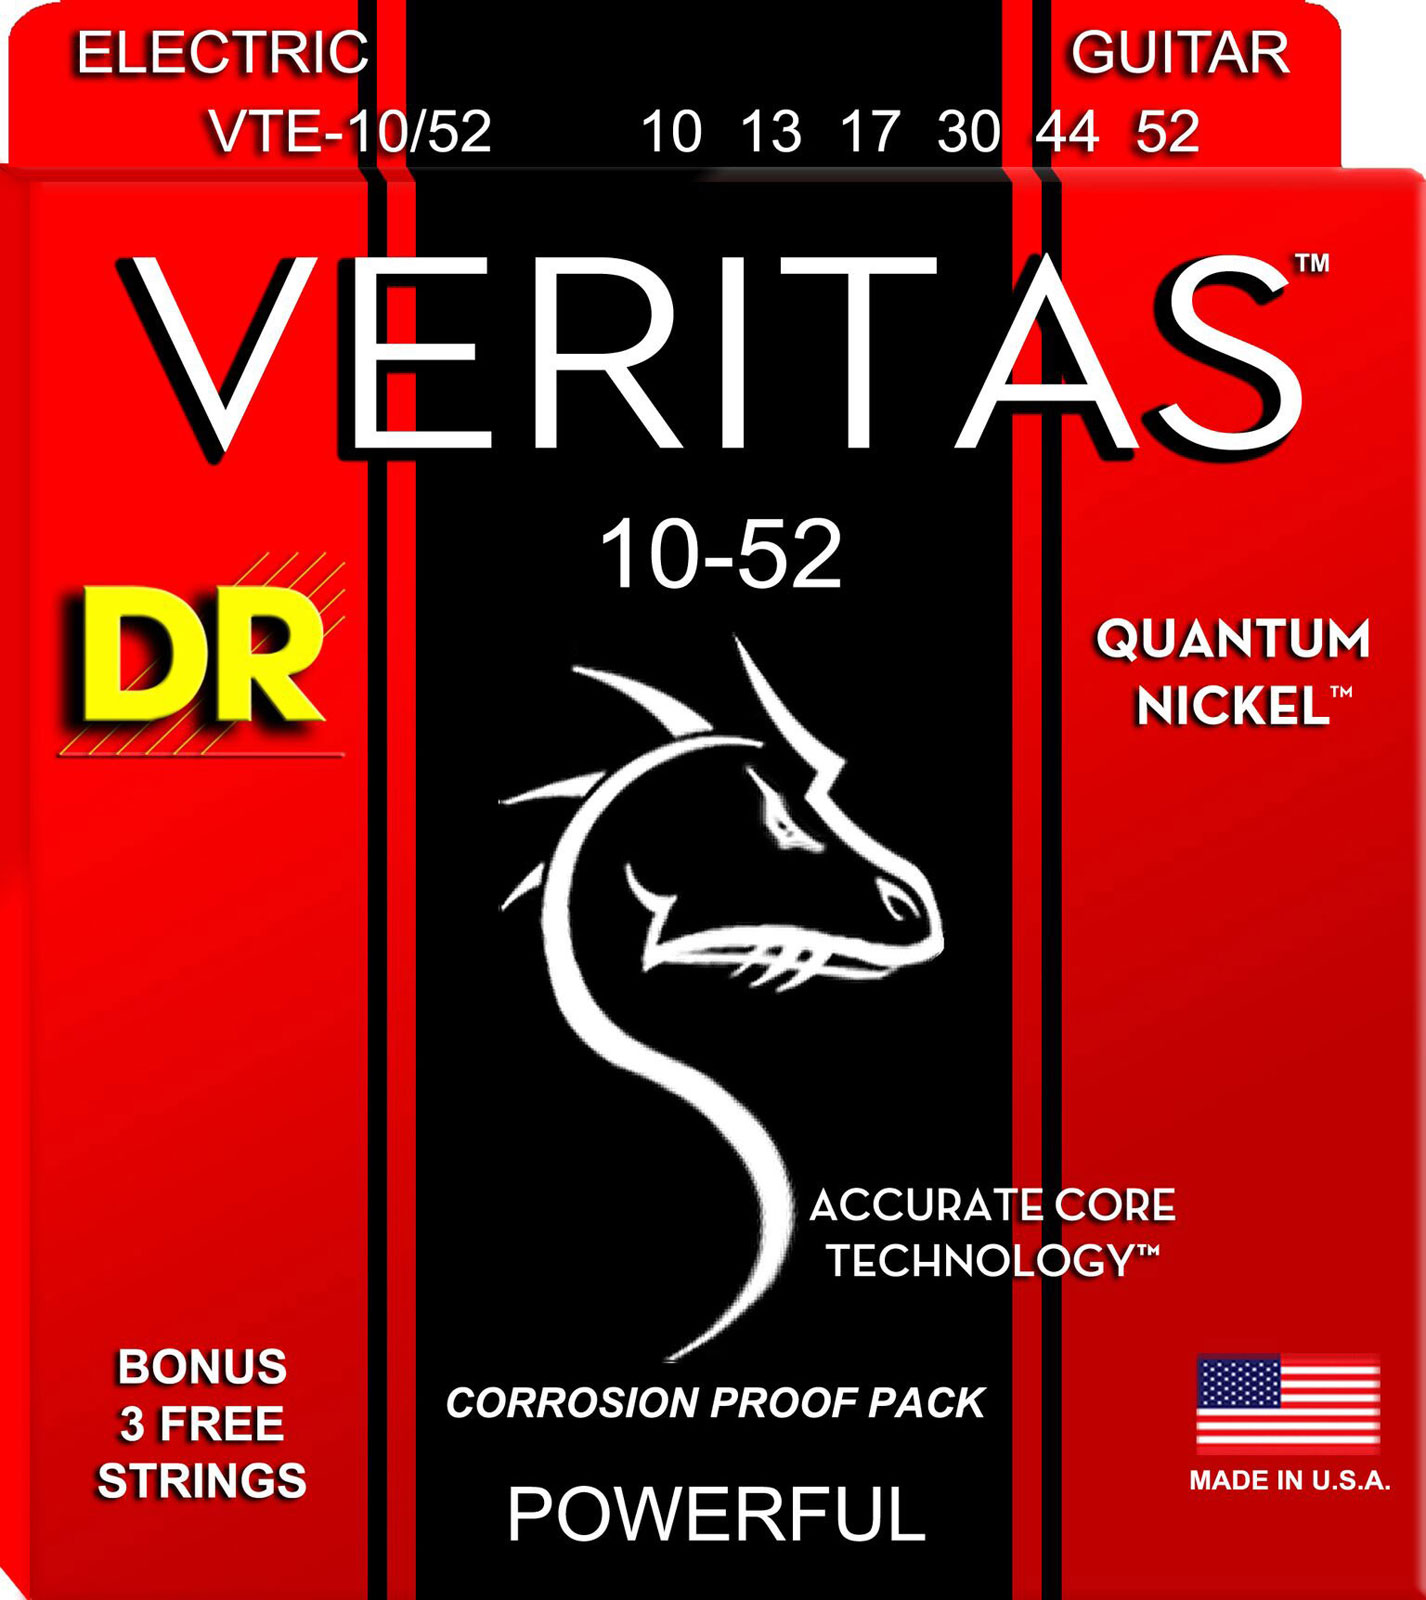 DR STRINGS 10-52 VTE-10/52